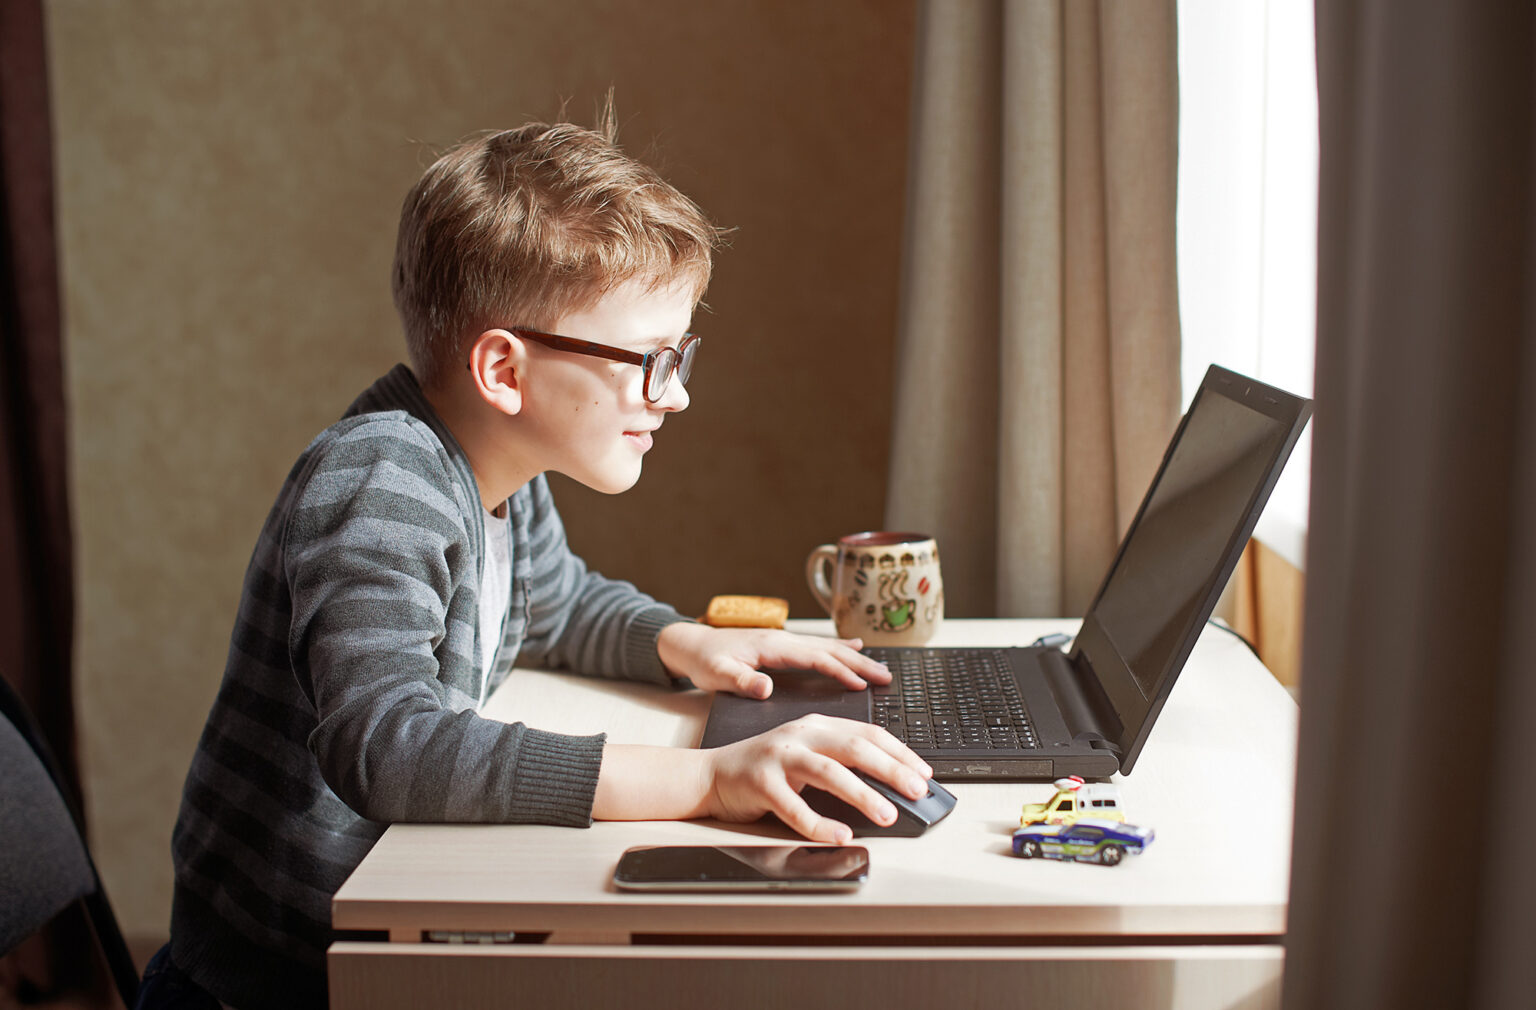 Увлекается компьютерами. Компьютер для детей. Ребенок за компьютером. Мальчик играет в компьютер. Компьютер для школьника.